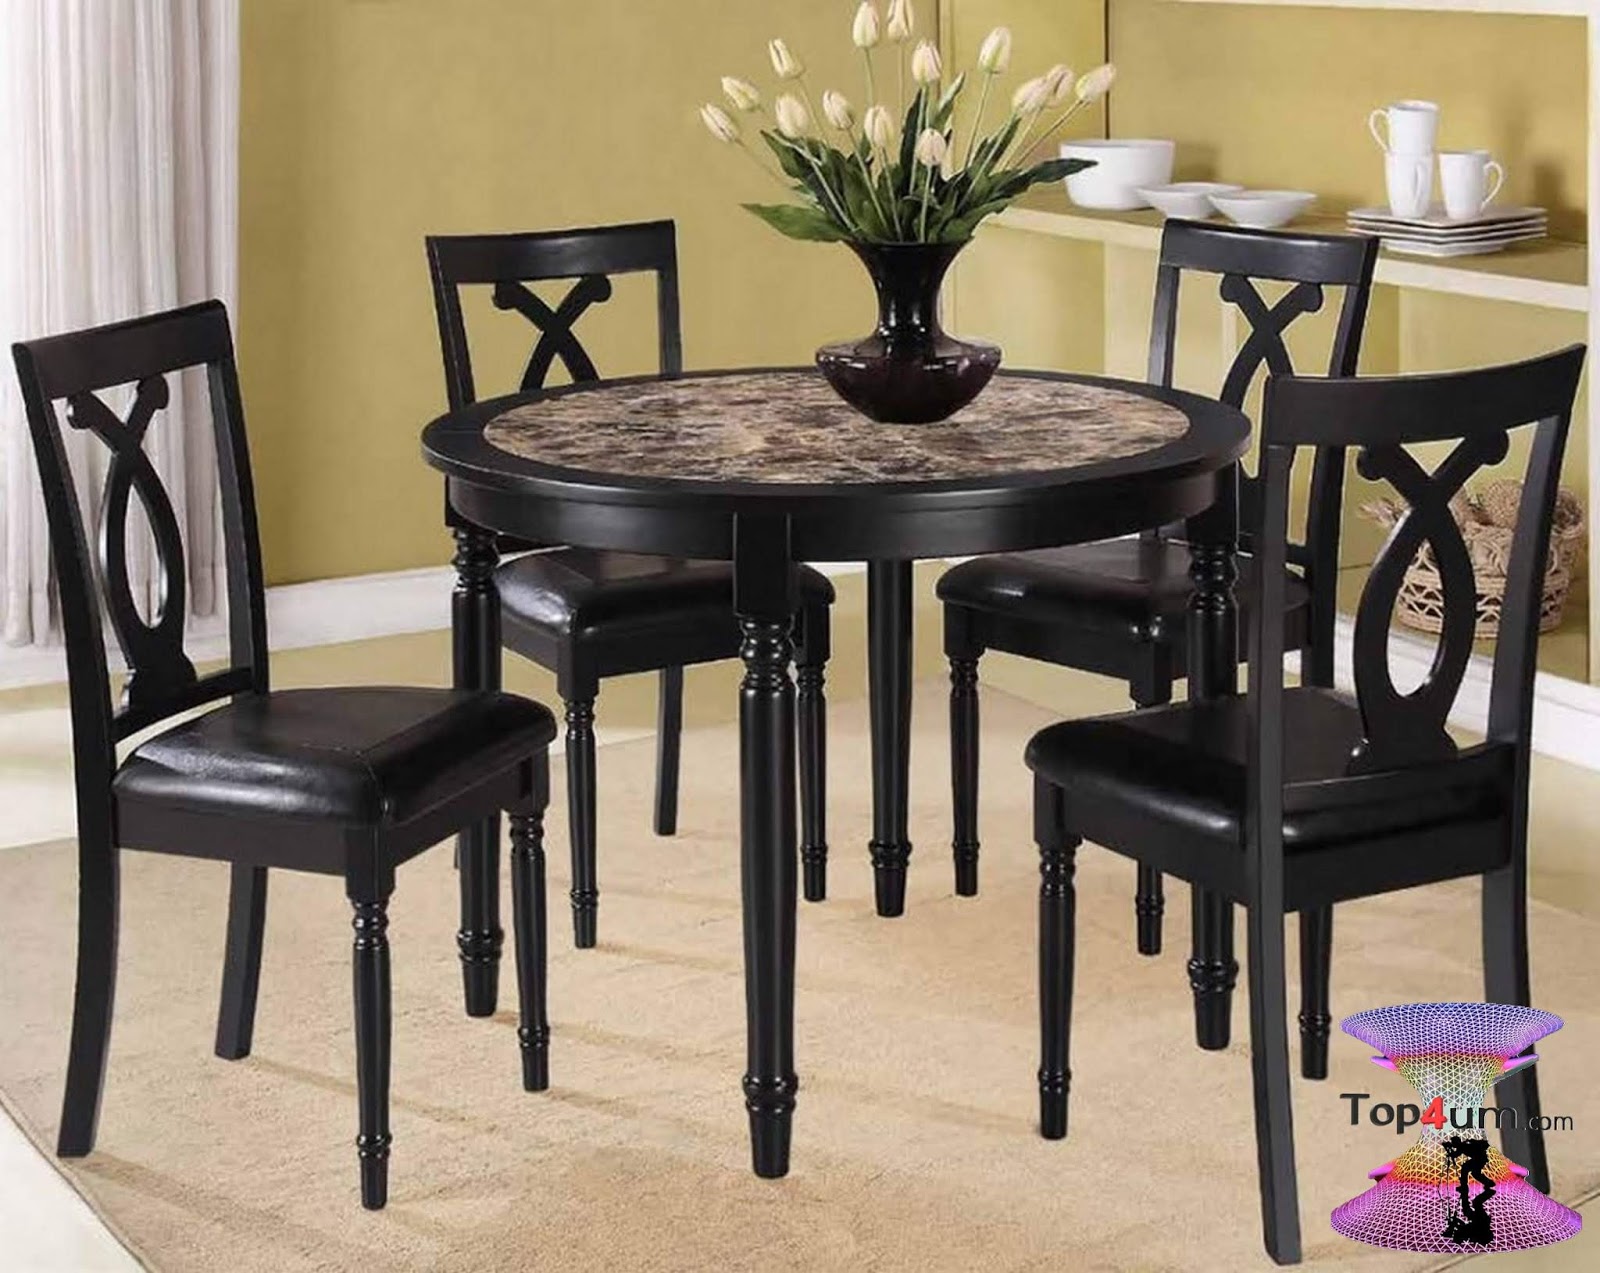 Столы кухонные м. Стол Dining Table черный. Стол и стулья для маленькой кухни. Стол кухонный круглый. Красивые столы и стулья для кухни.